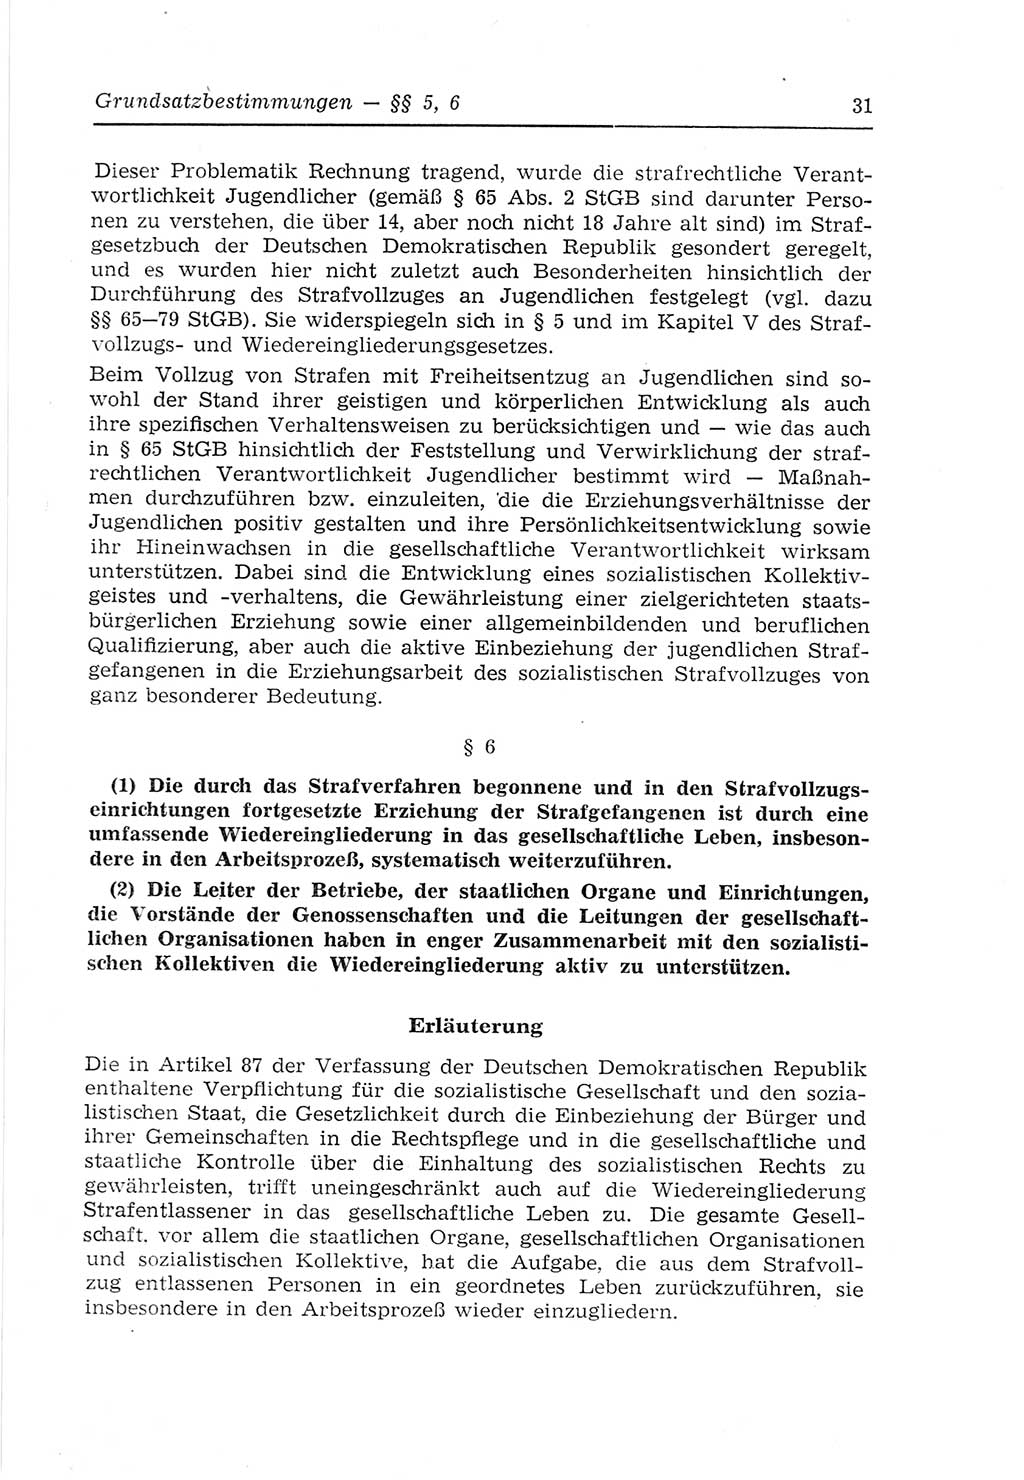 Strafvollzugs- und Wiedereingliederungsgesetz (SVWG) der Deutschen Demokratischen Republik (DDR) 1968, Seite 31 (SVWG DDR 1968, S. 31)